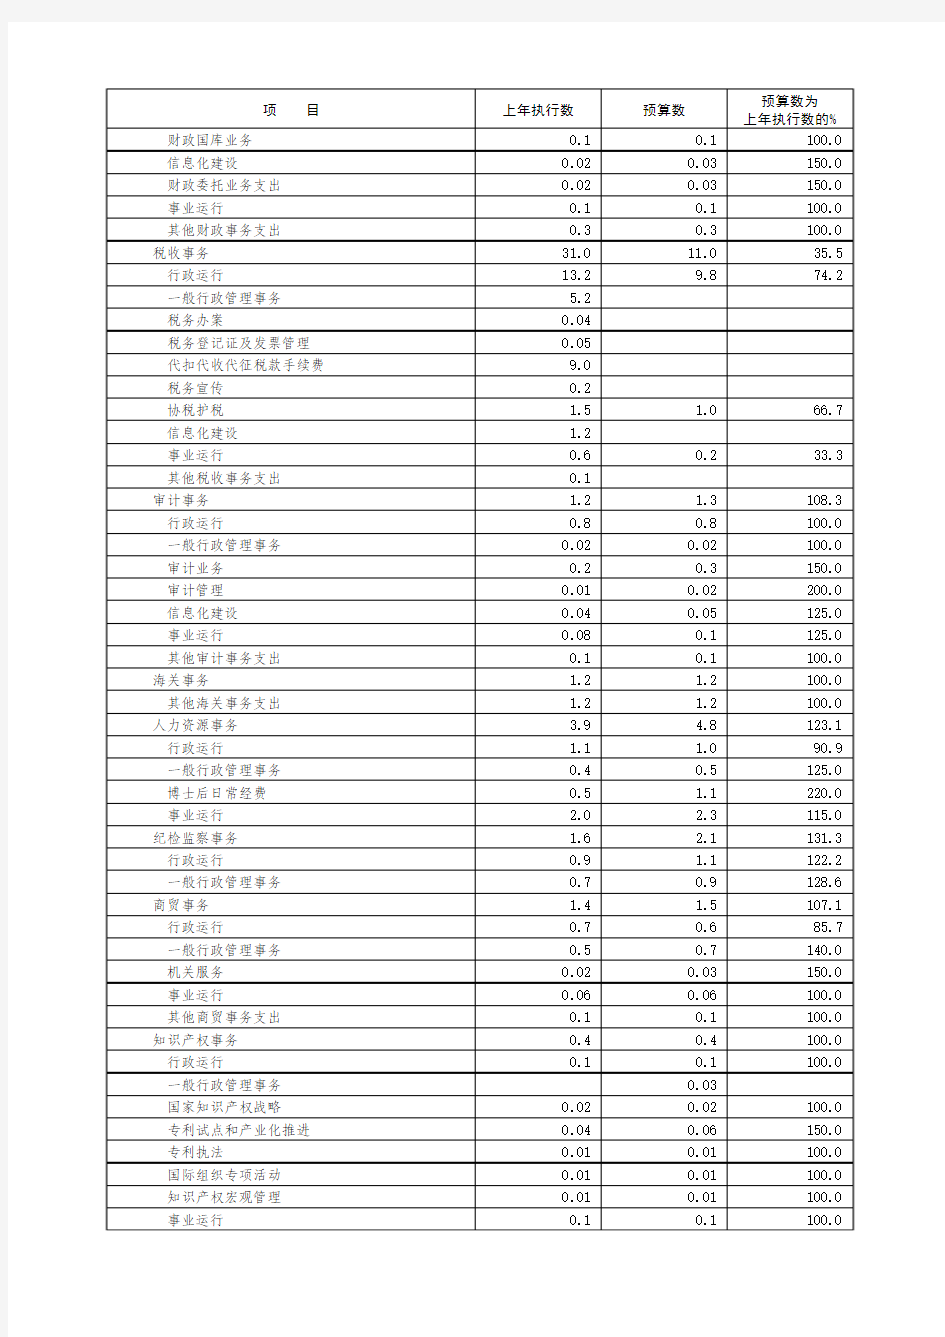 上海市2019年市级一般公共预算支出预算表